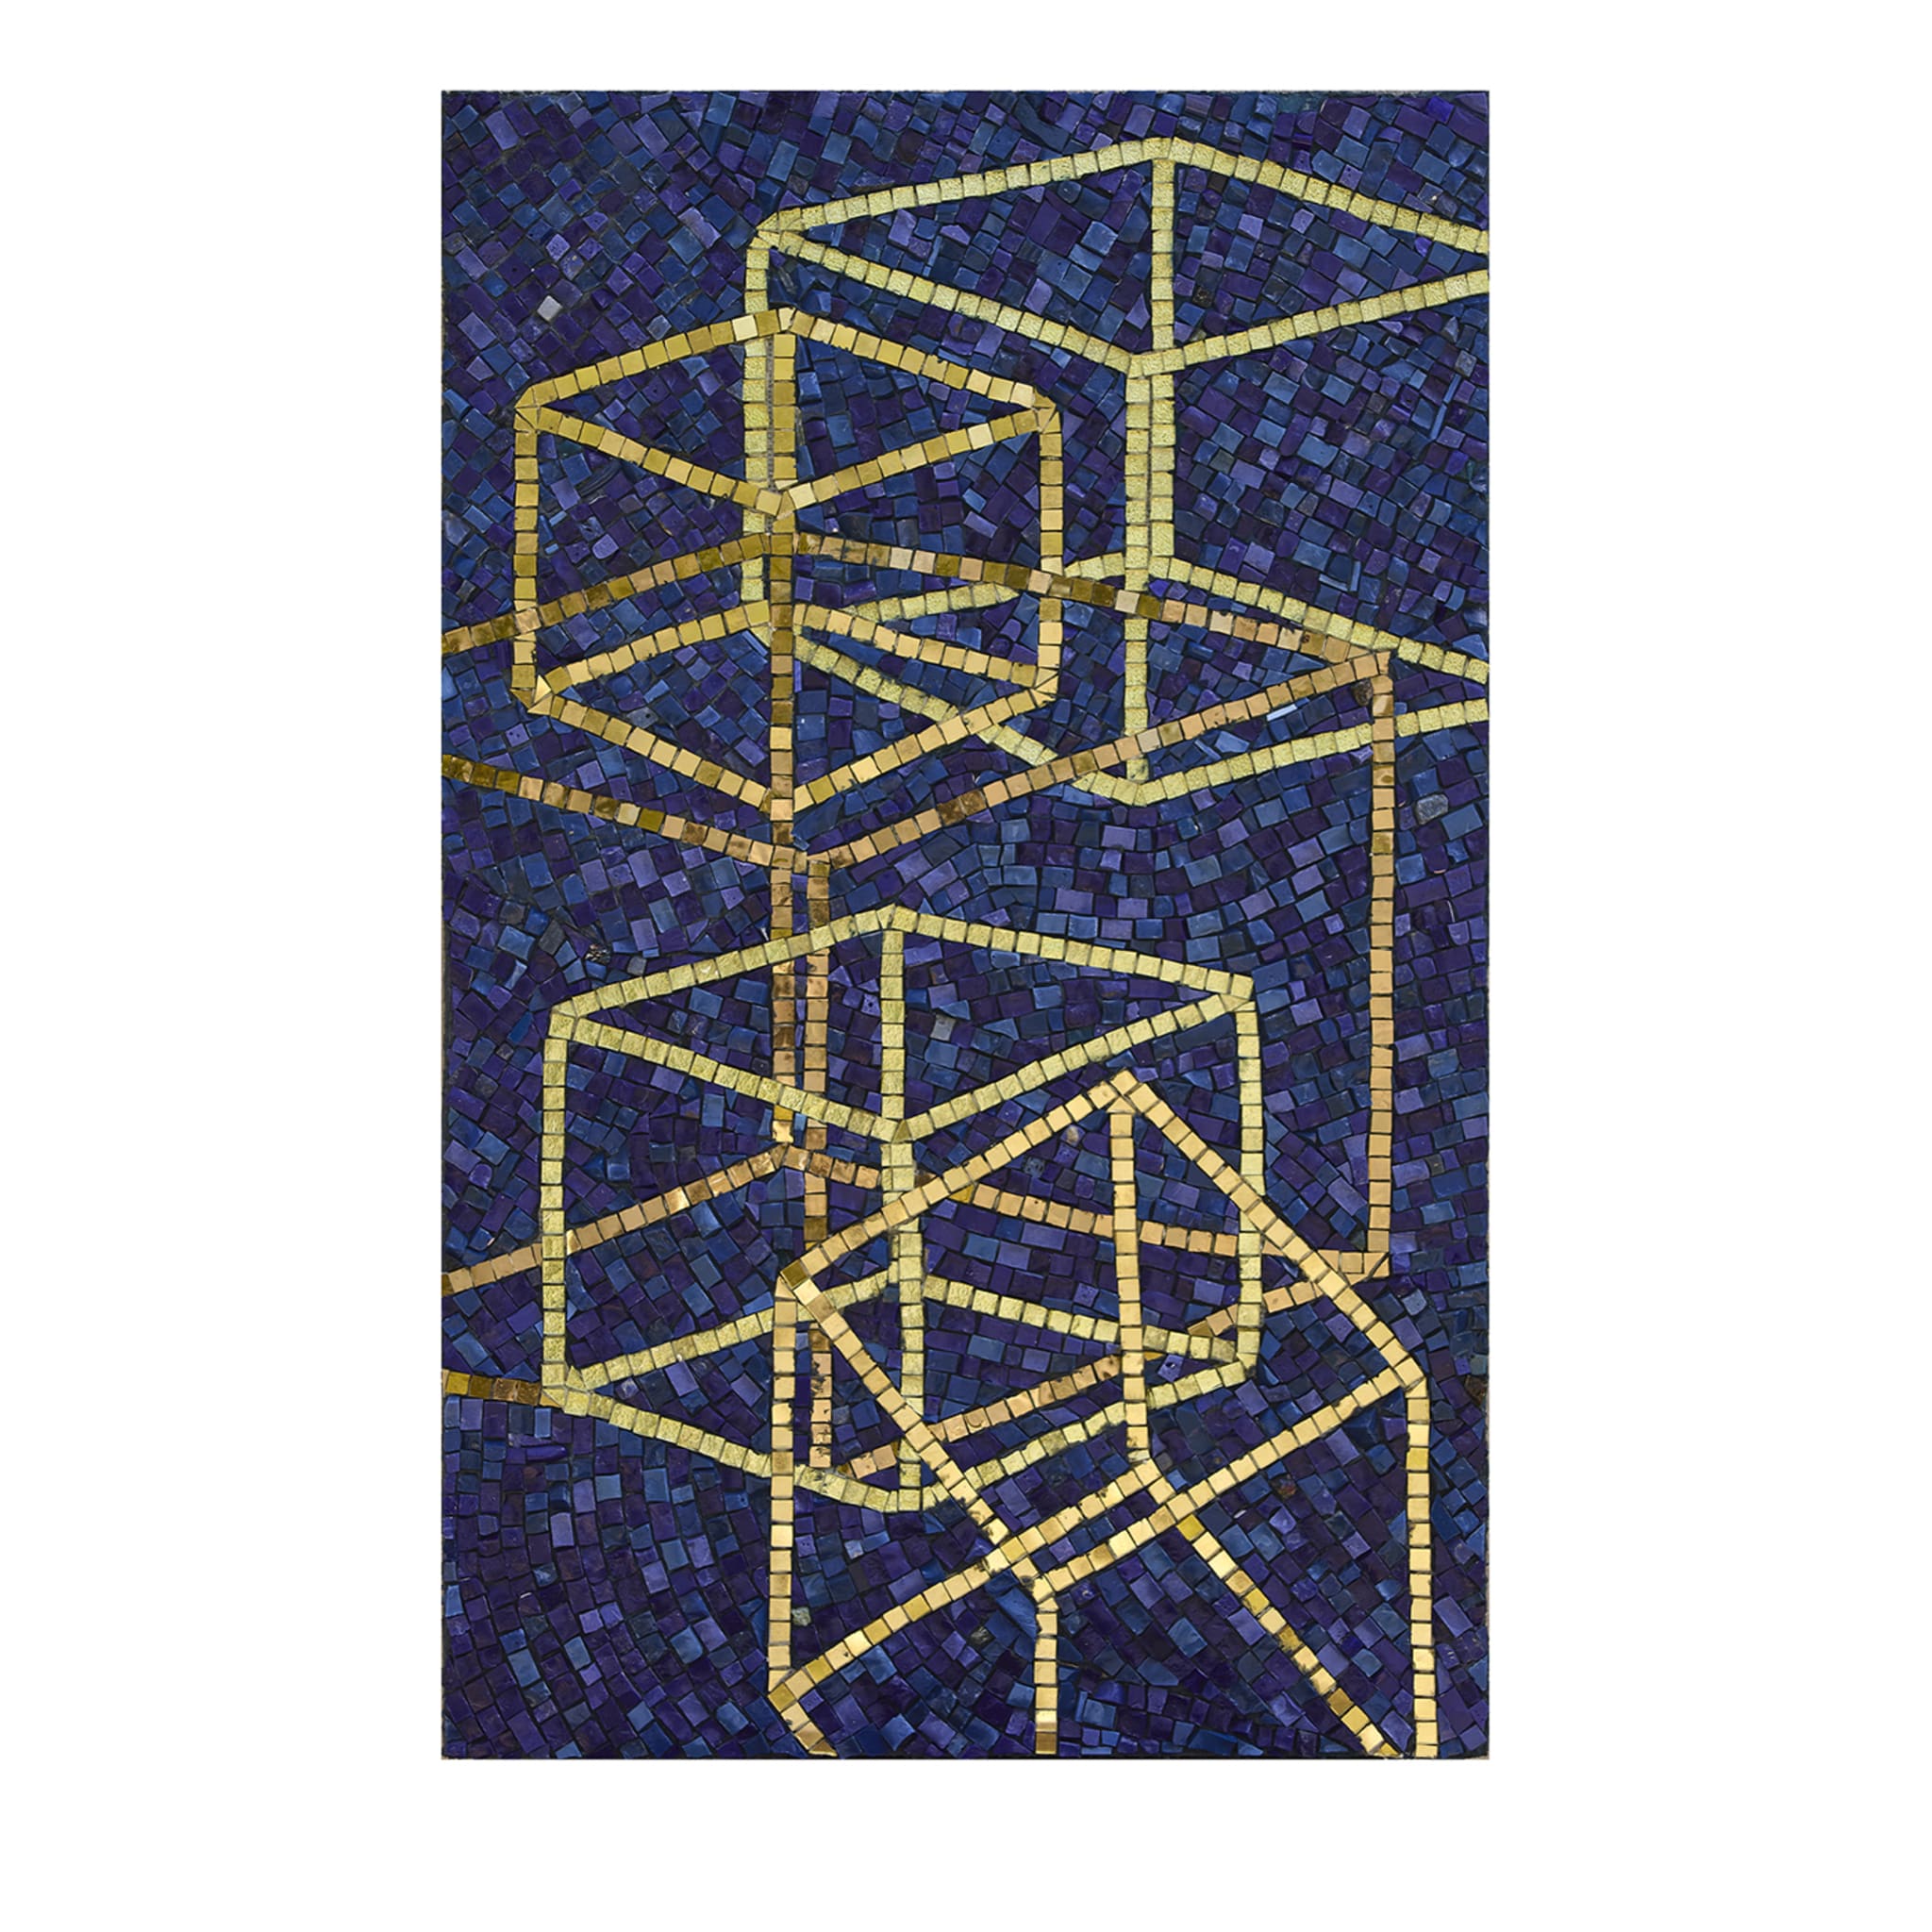 Solidi Platonici 1 Panel de mosaico azul y dorado - Vista principal